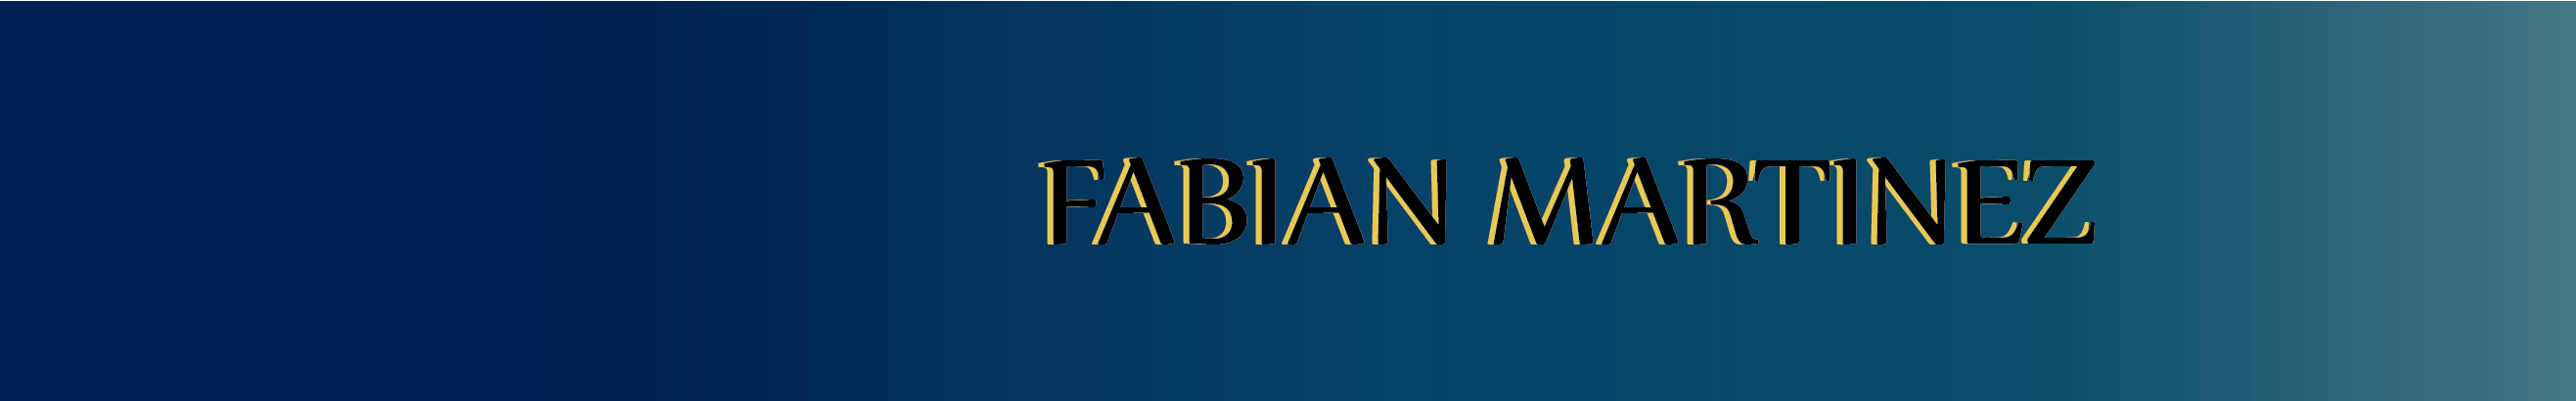 Fabián Martínez Ardila's profile banner